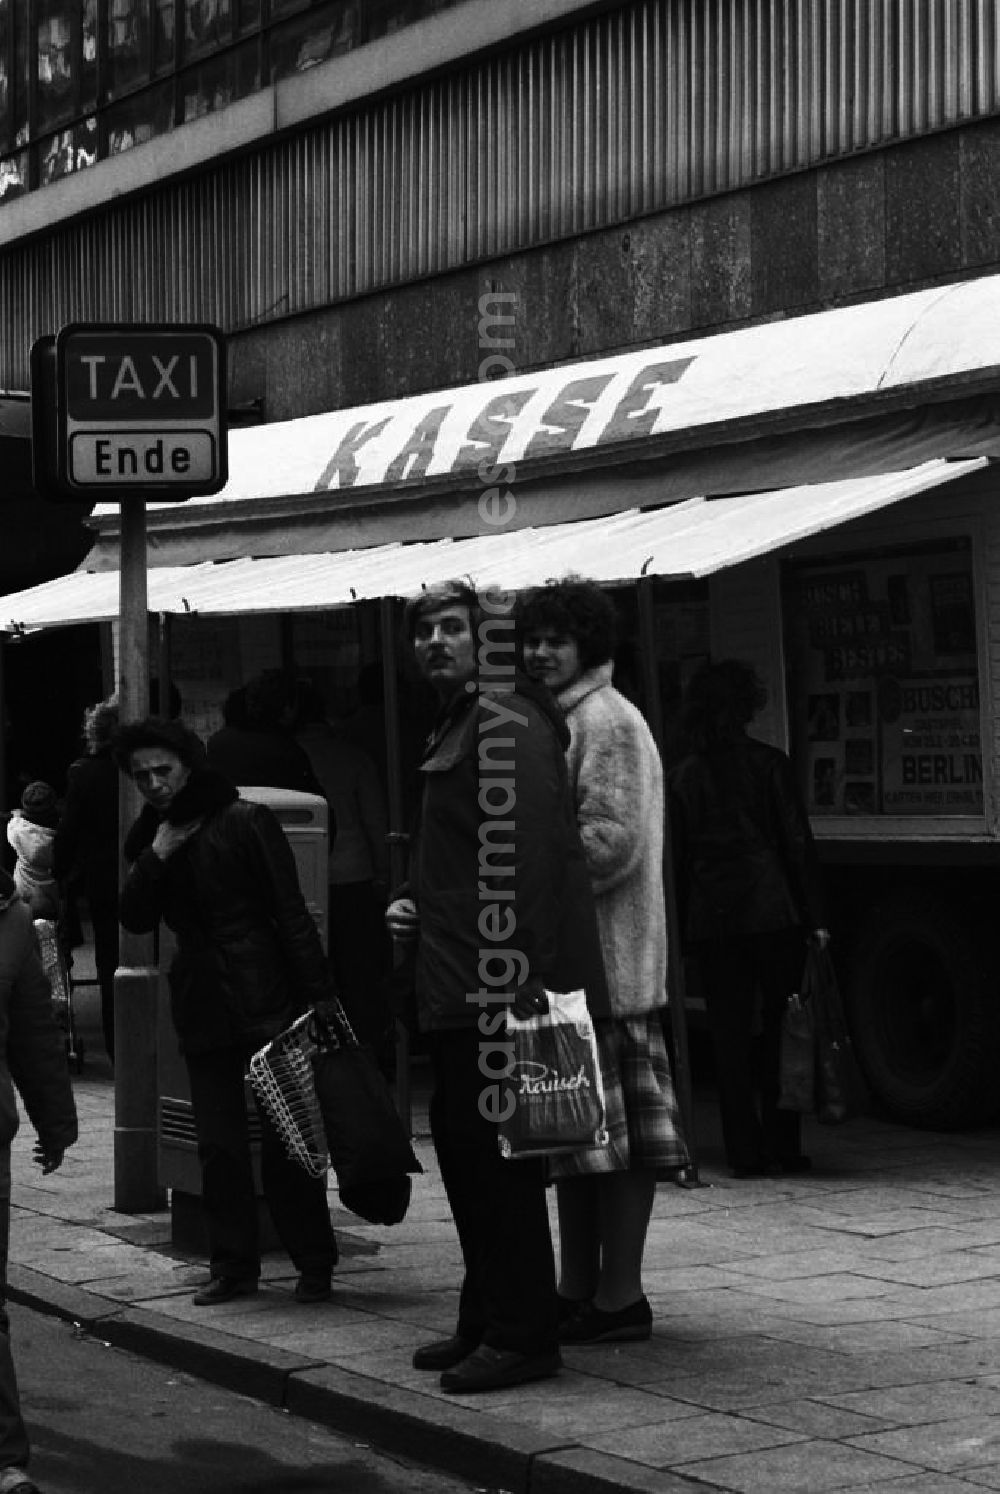 Berlin: Unweit eines Kassenwagen für den Zirkus Busch warten Menschen am S-Bahnhof Alexanderplatz in Berlin auf ein Taxi am Taxistand. Das kostet vor allem Zeit. Taxen sind auf den DDR-Straßen rar, deshalb verdienen sich auch viele private PKW-Besitzer mehr oder weniger geduldet als Schwarztaxi noch Geld hinzu.